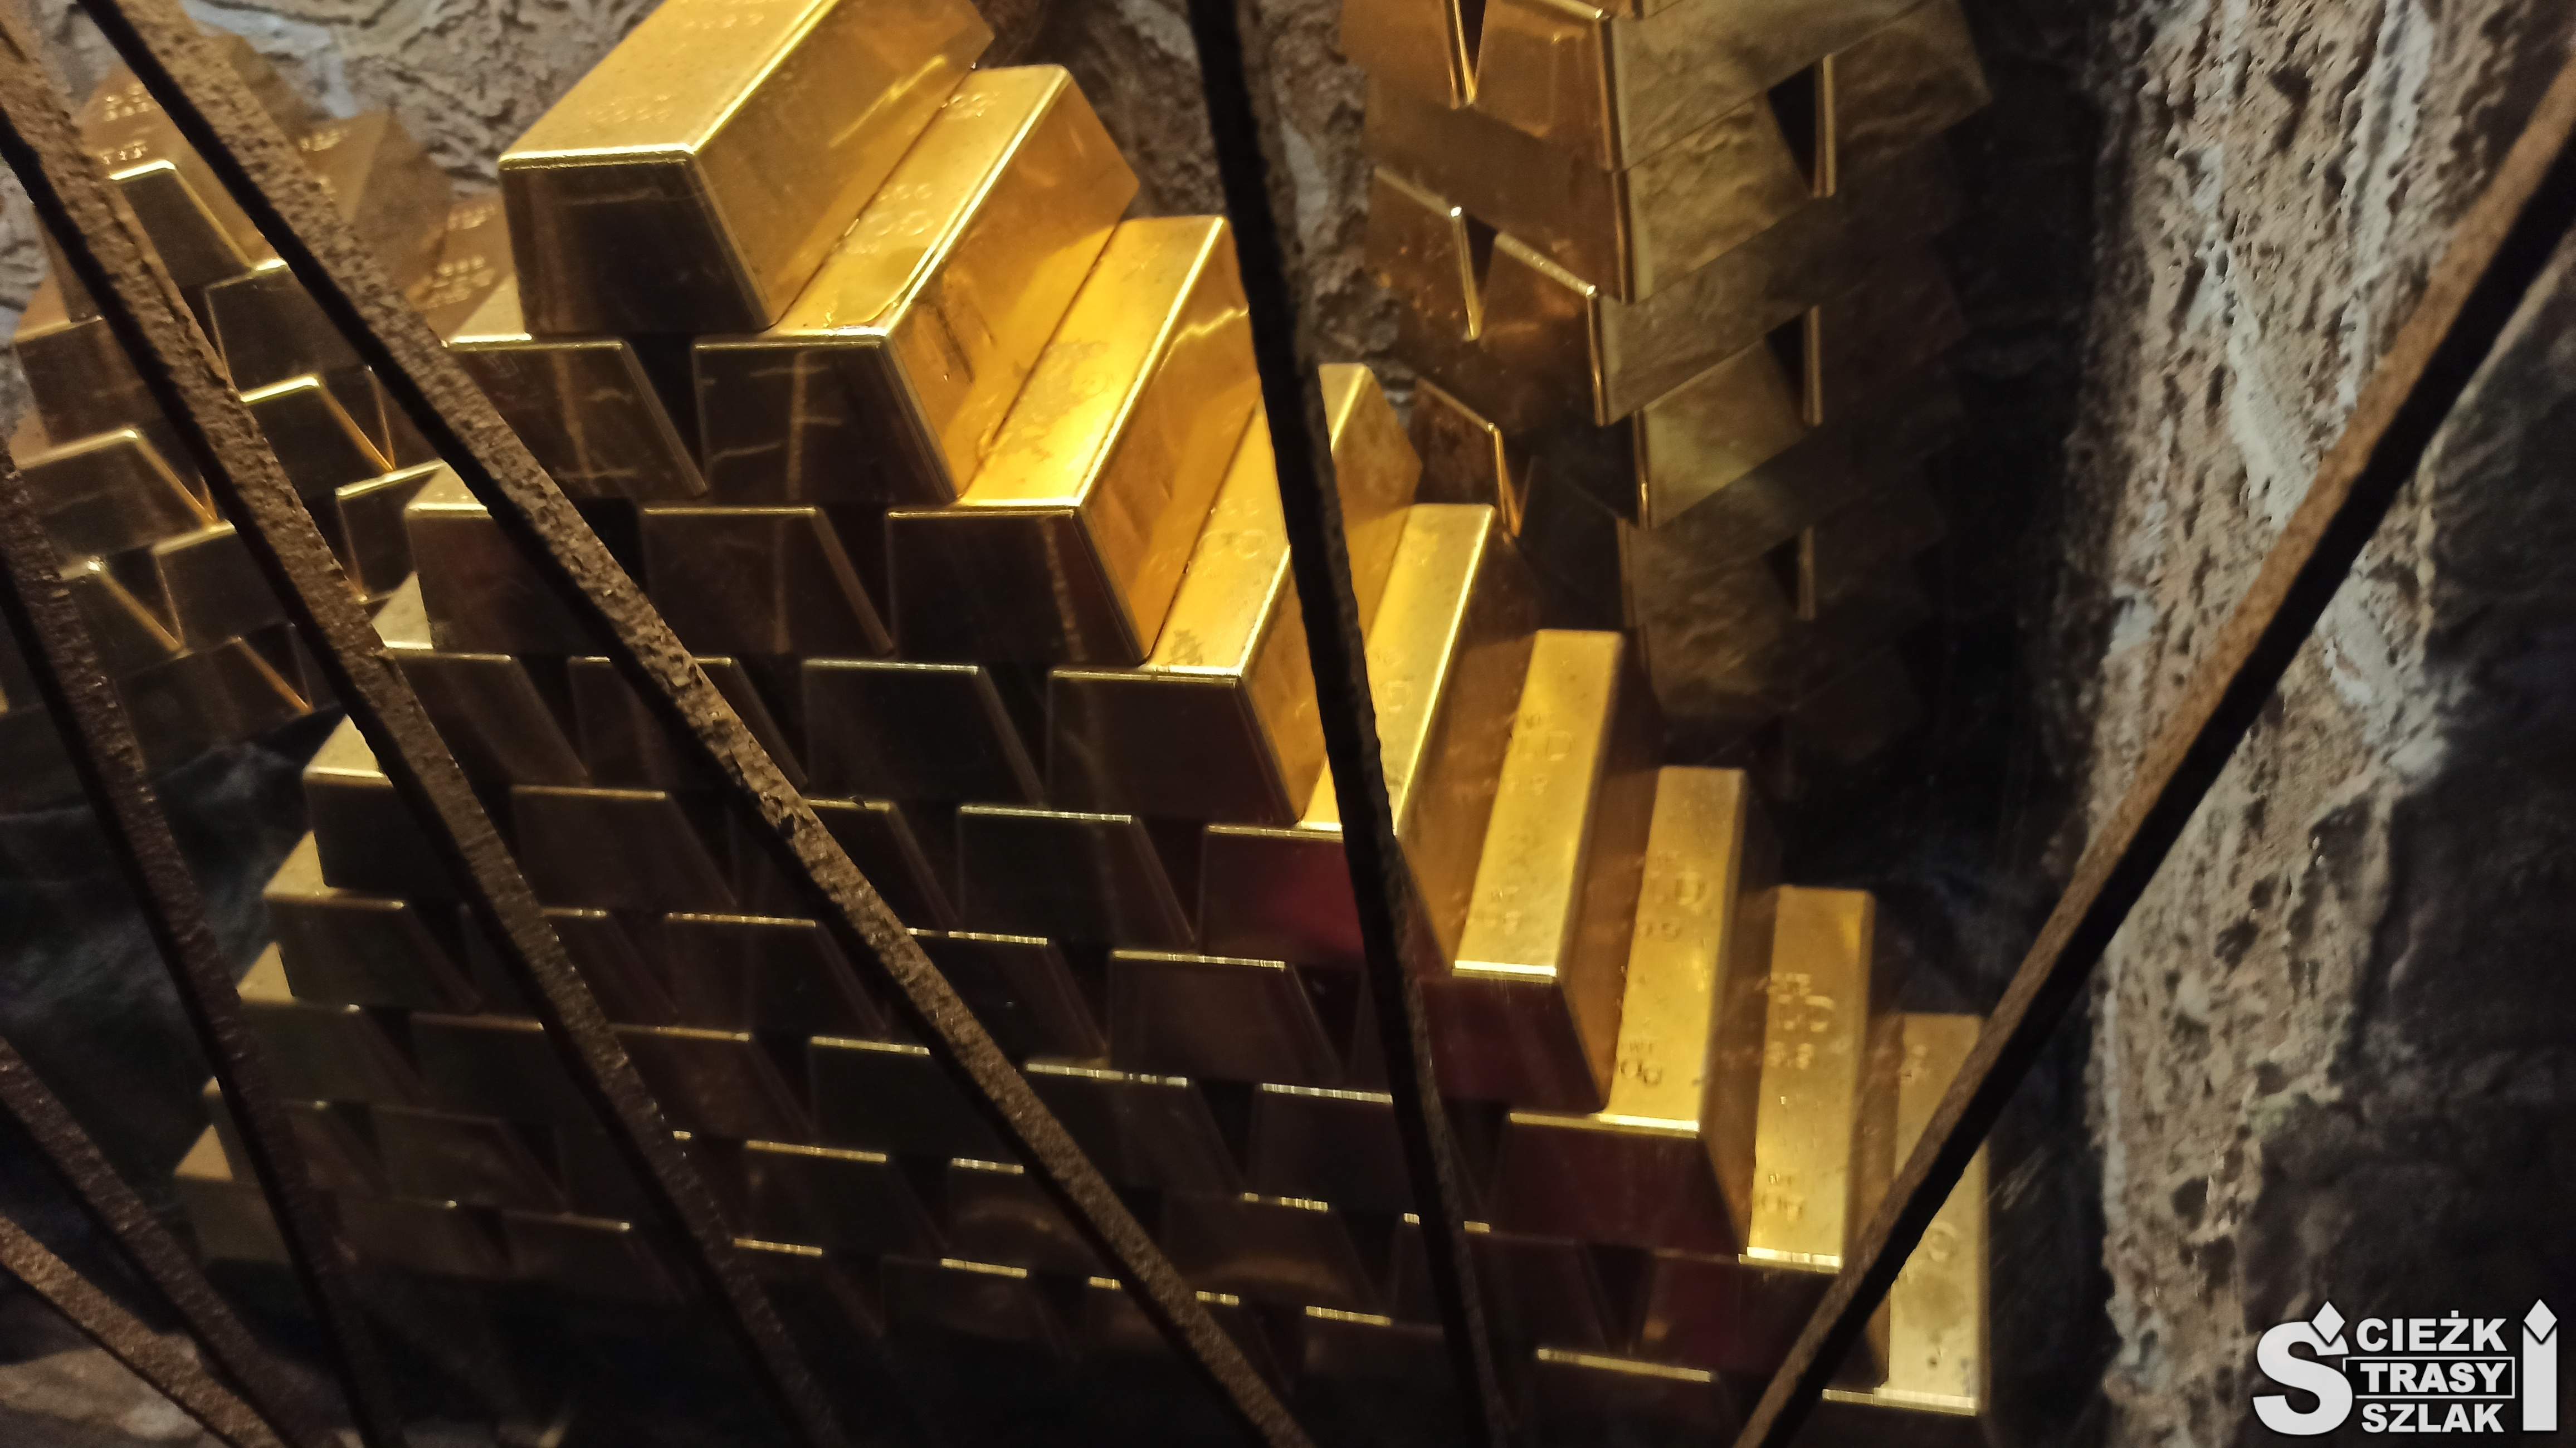 Piramida w złotym kolorze ułożona ze sztabek złota w kopalni w Złotym Stoku